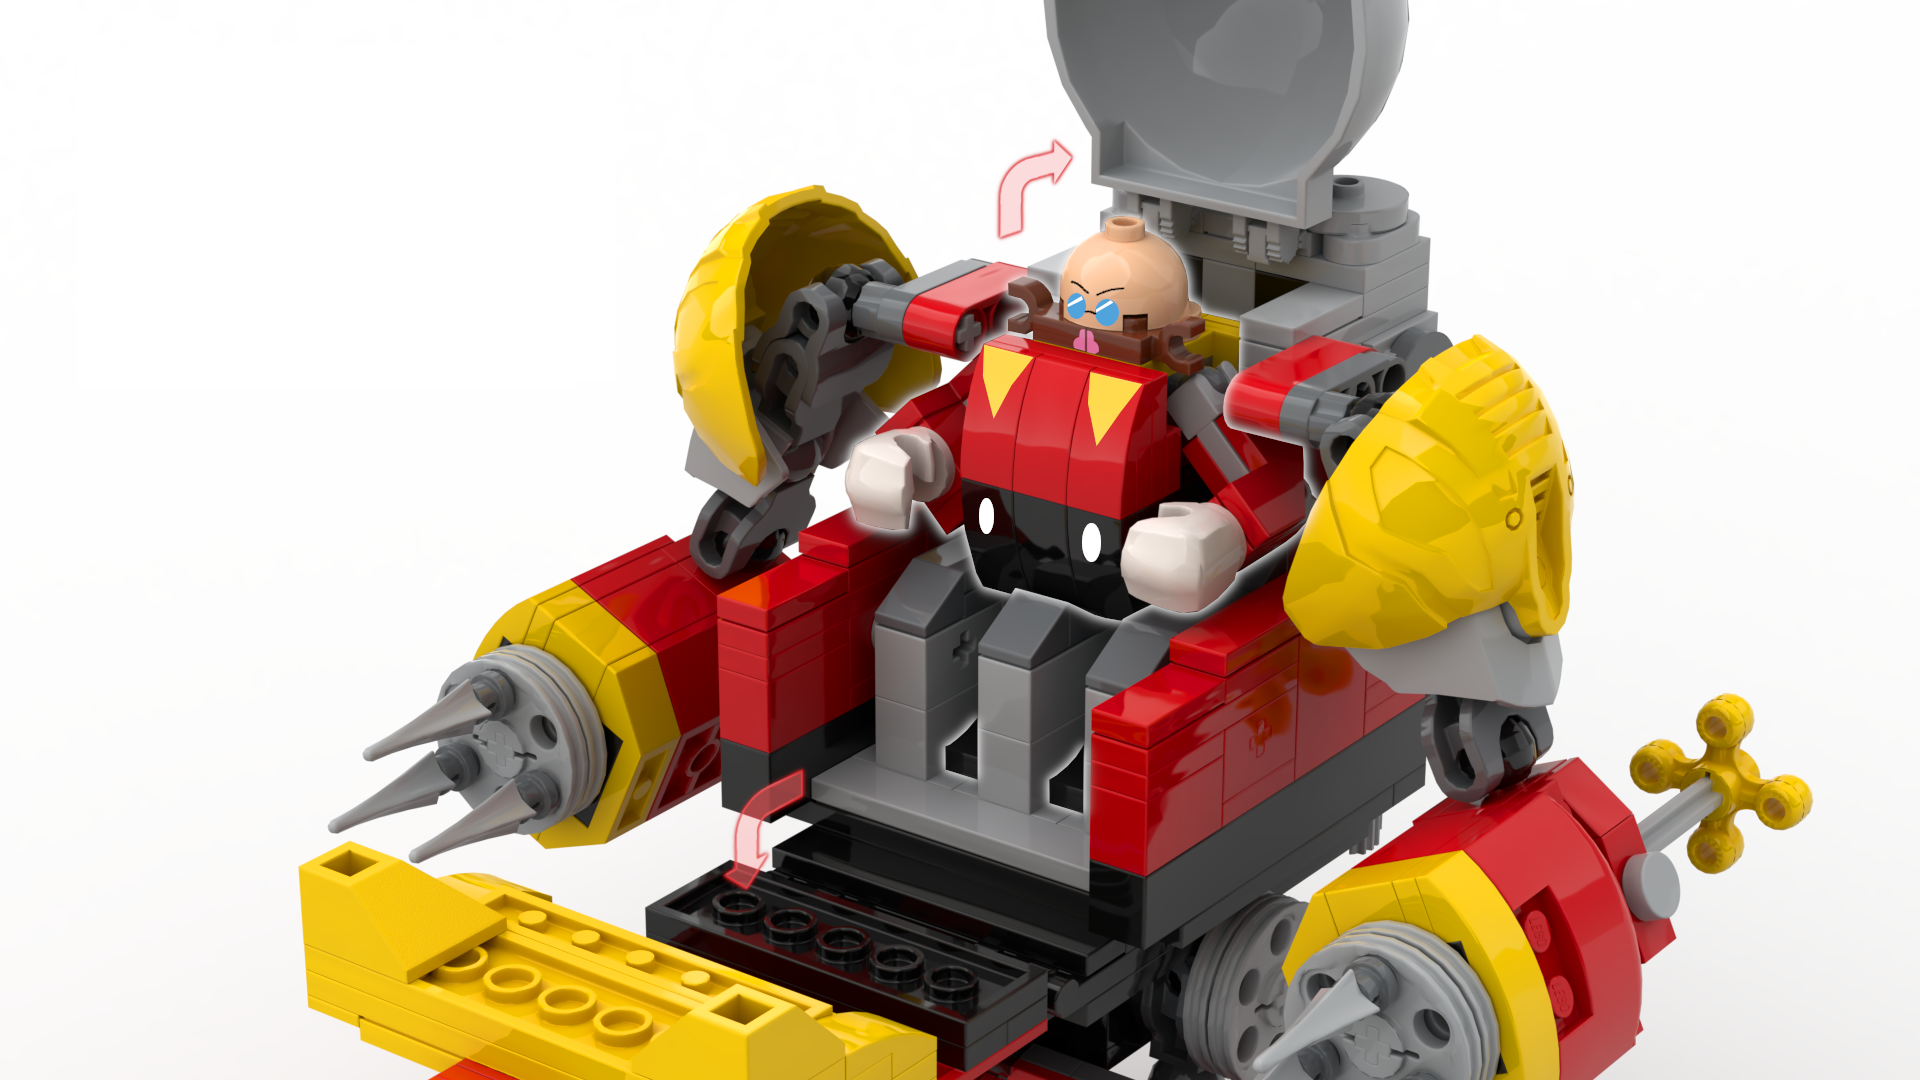 Fã apresenta projeto para a LEGO inspirado em Sonic - Blog TecToy